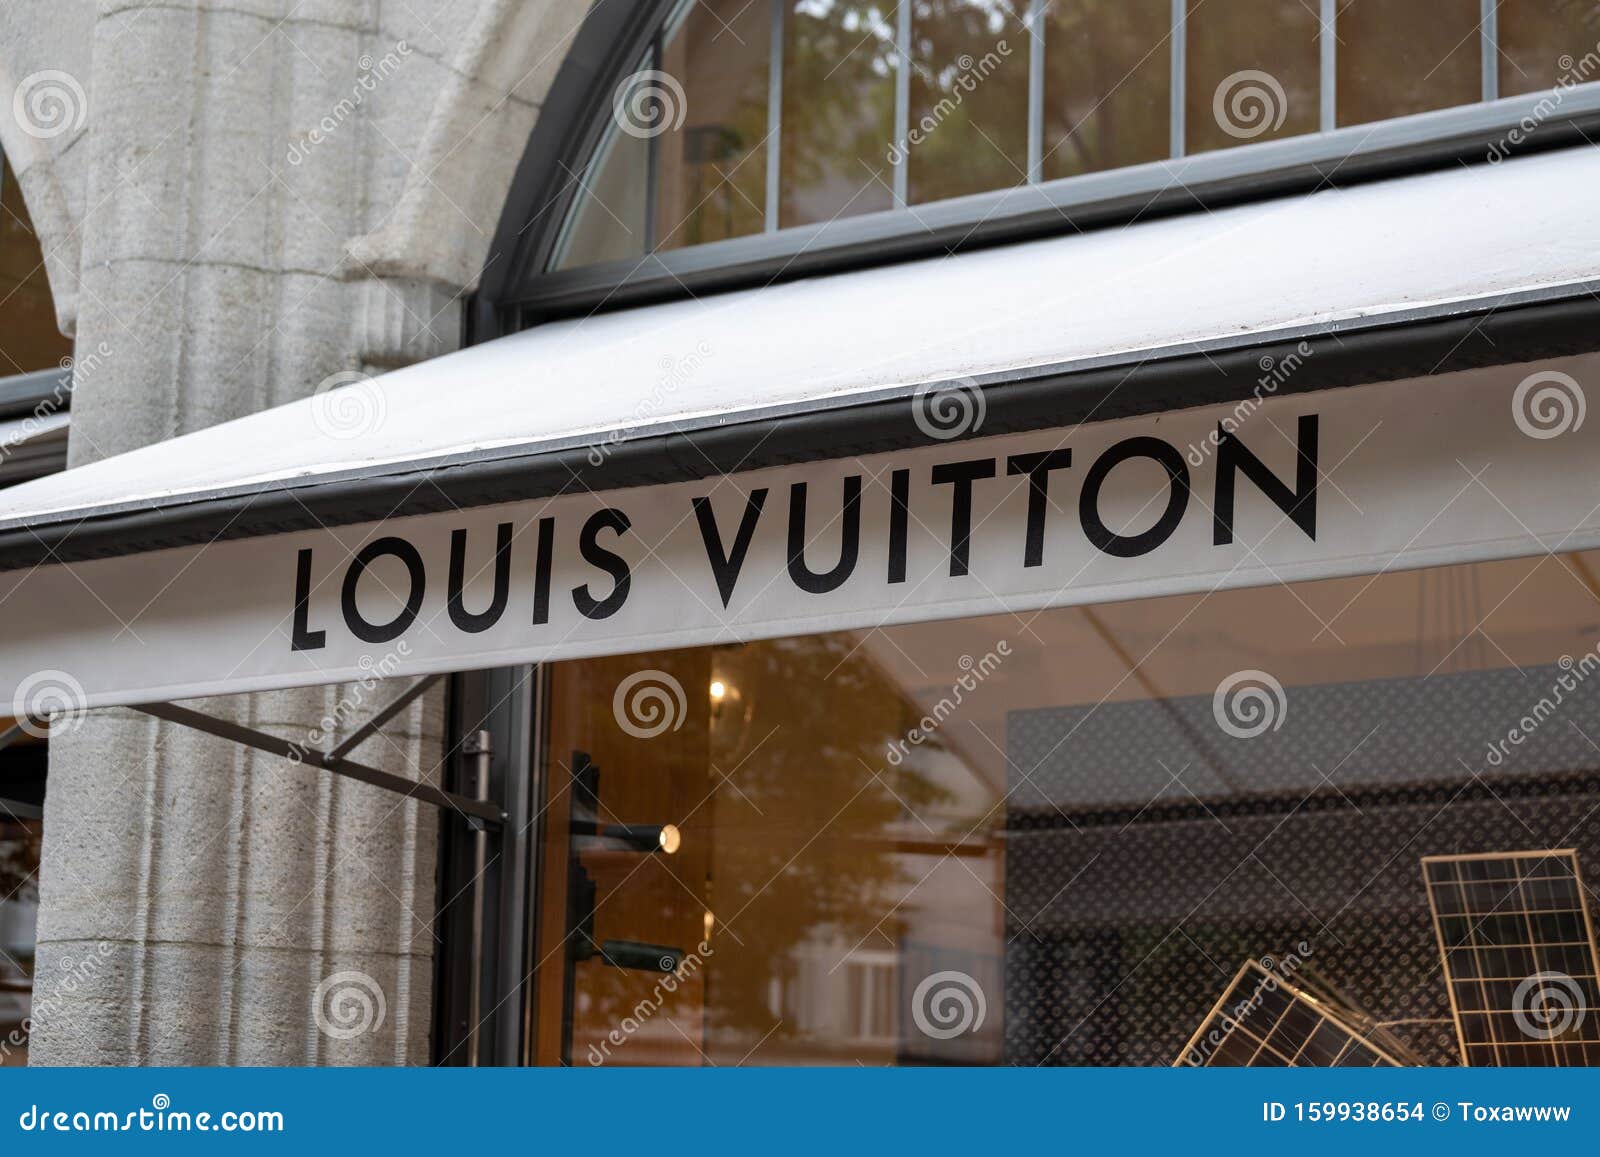 Louis Vuitton Logo at the Brand Store Facade Editorial Stock Image